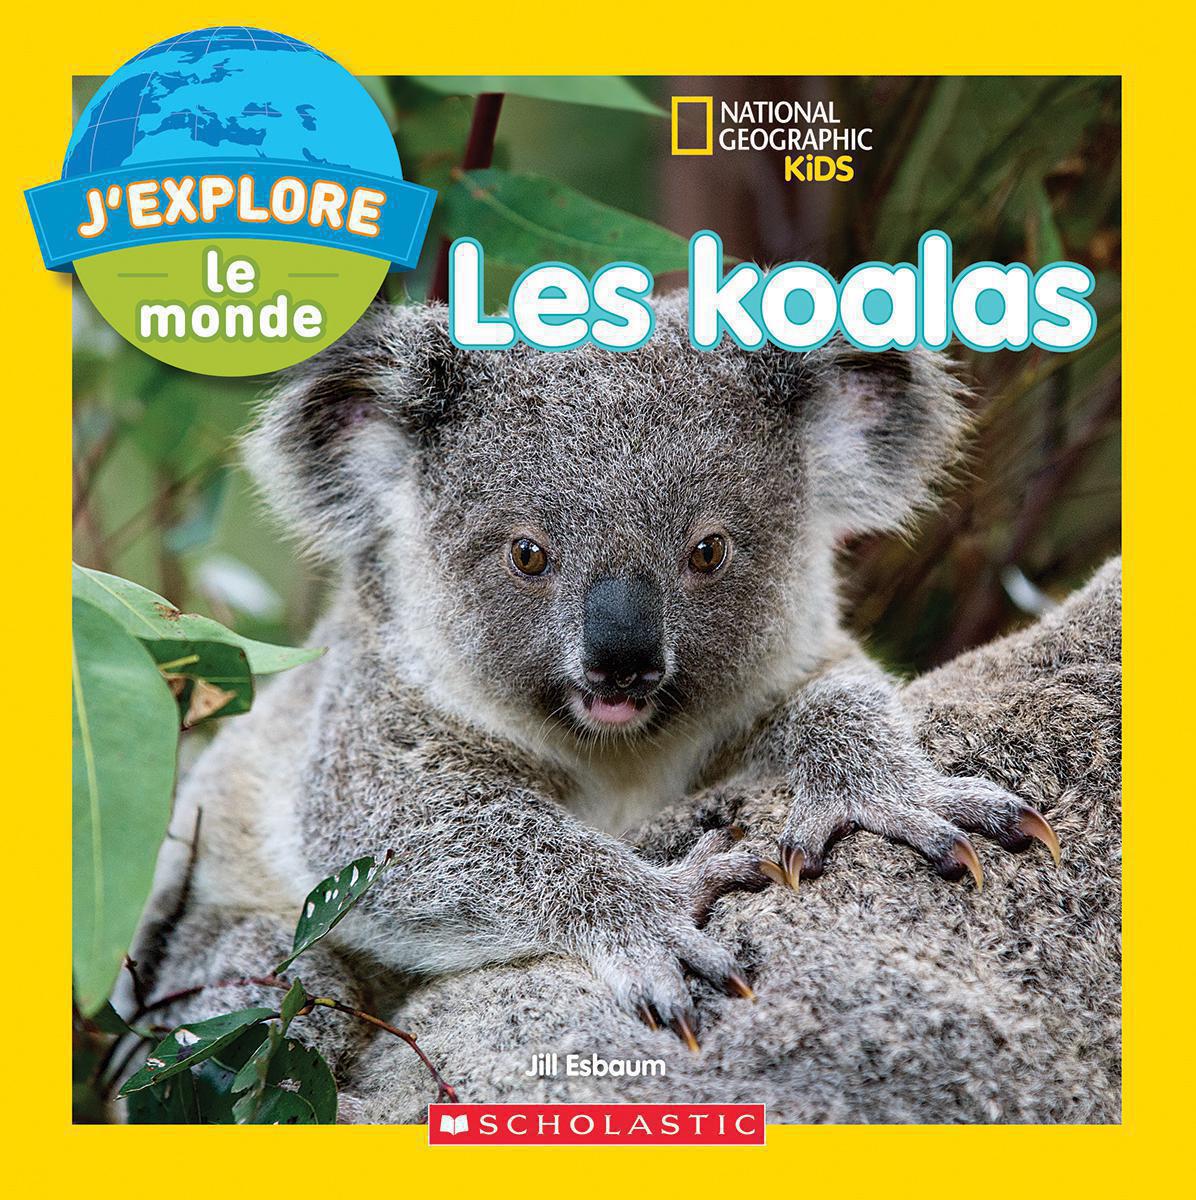  National Geographic Kids : J'explore le monde : Les koalas 